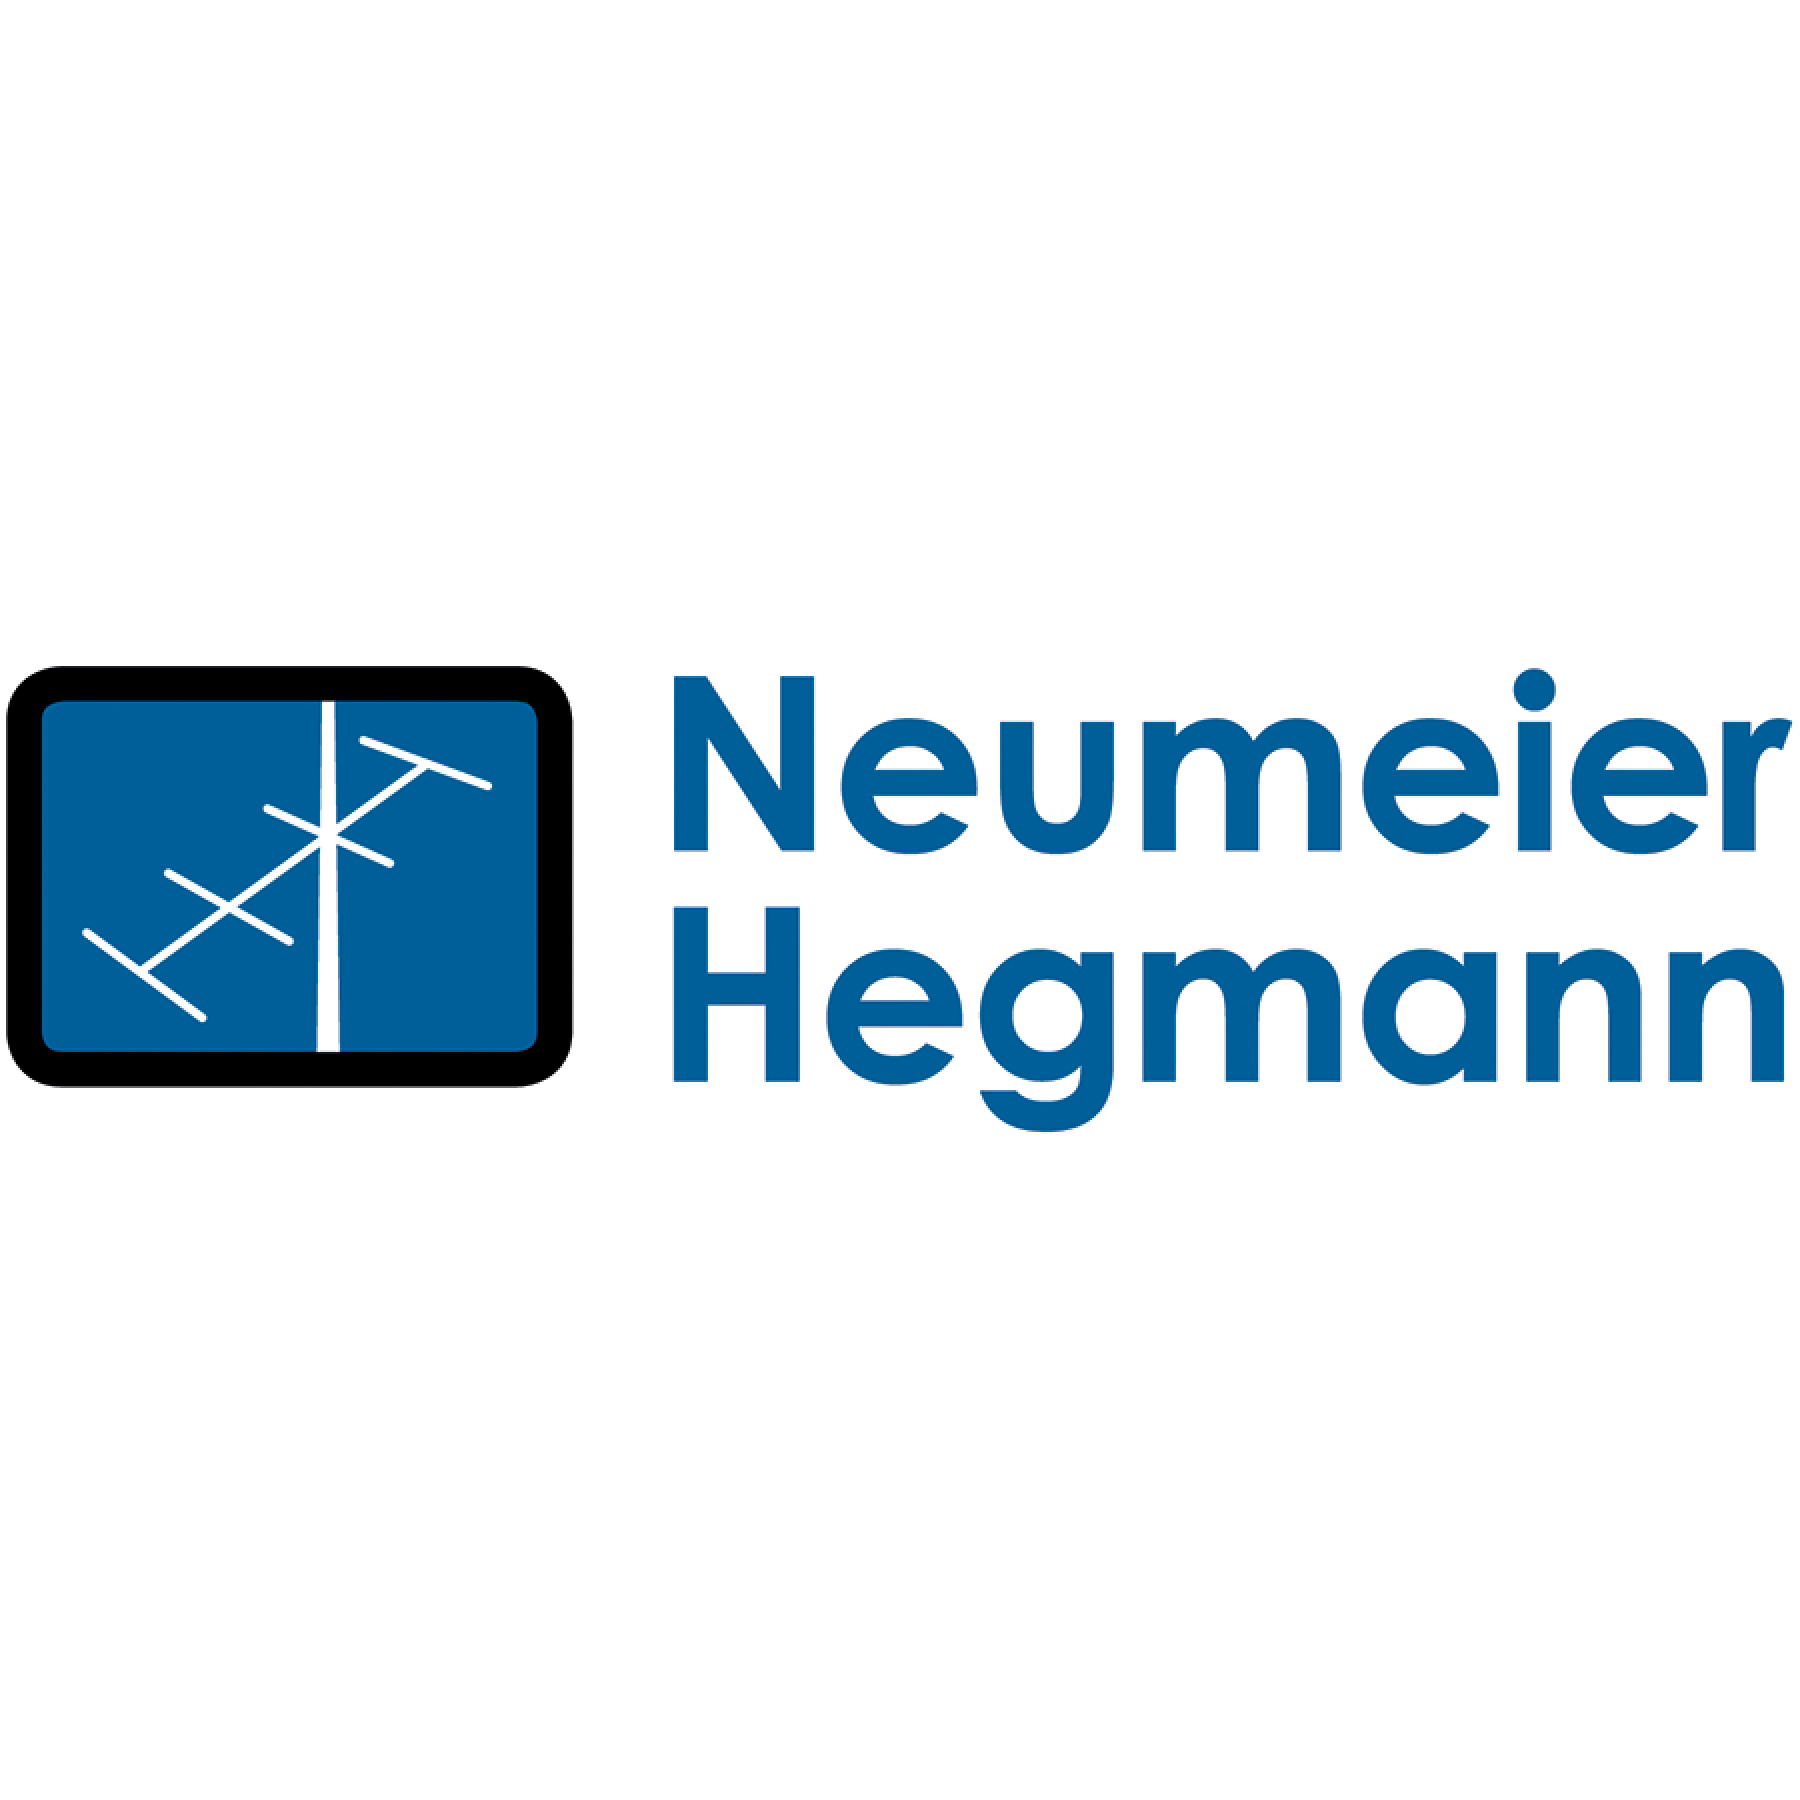 Neumeier, Hegmann & Co. Fernsehdienst - Antennenbau GmbH in München - Logo